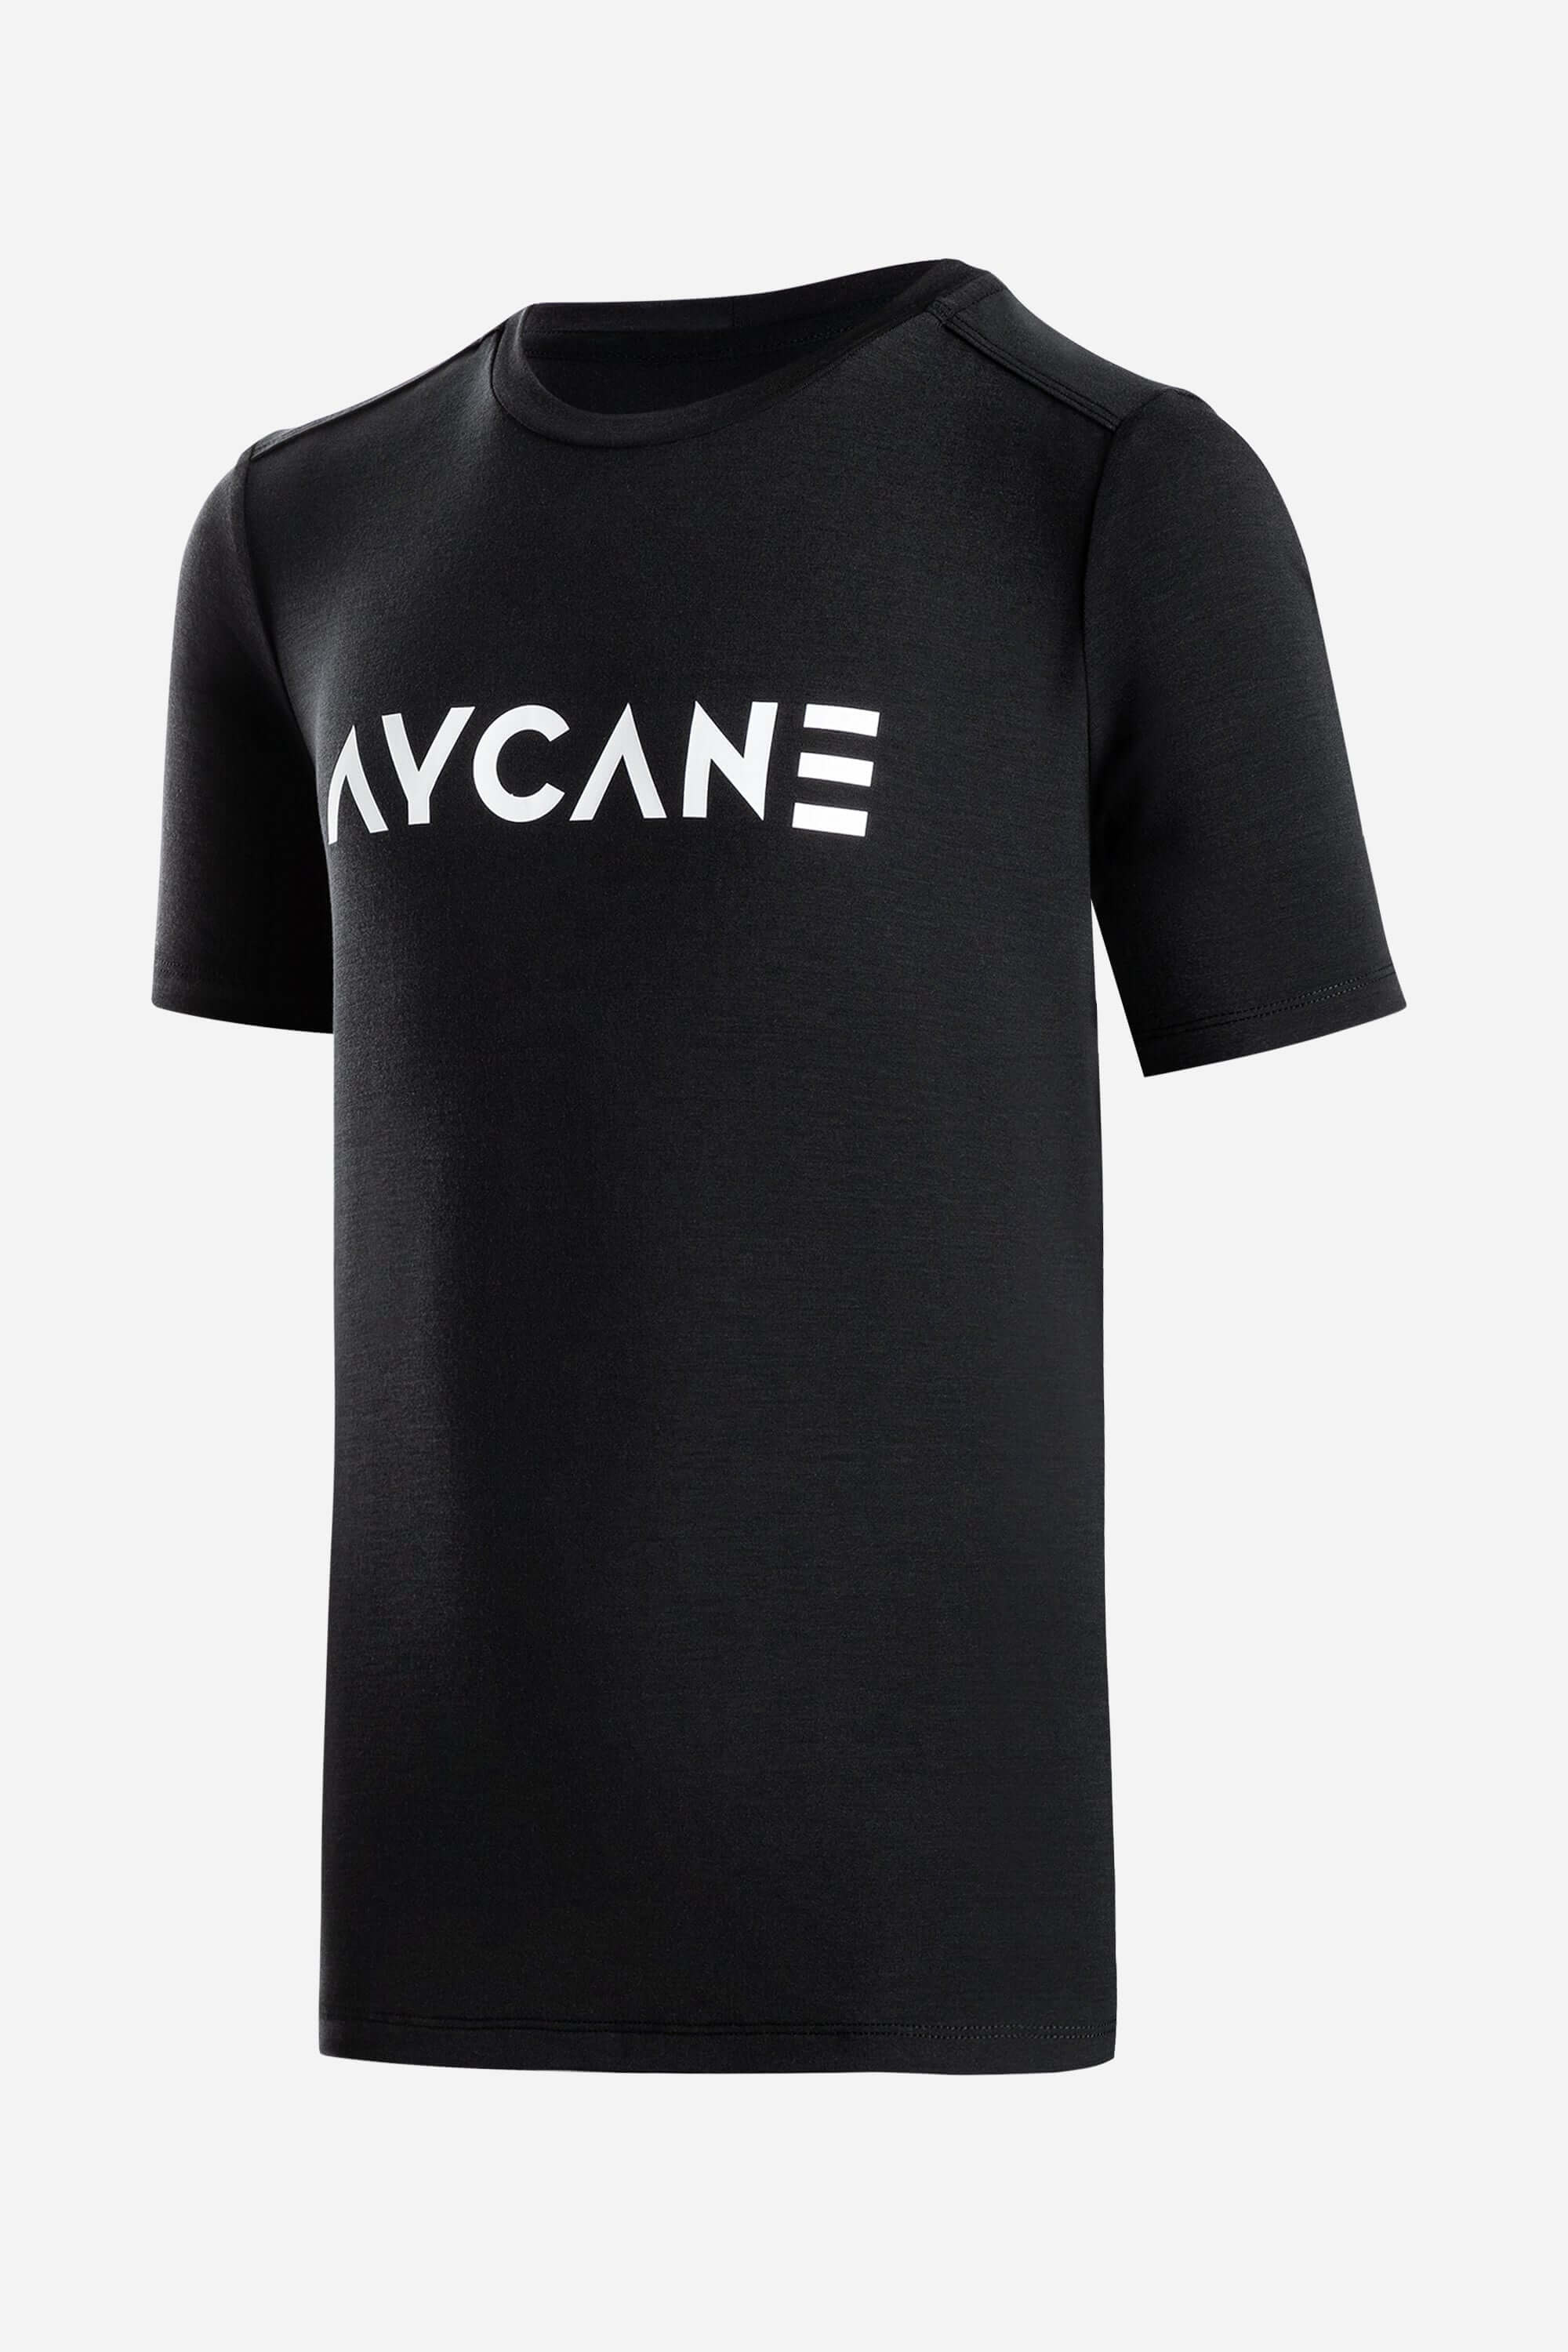 Youth black AYCANE t-shirt short sleeve with big white logo on chest